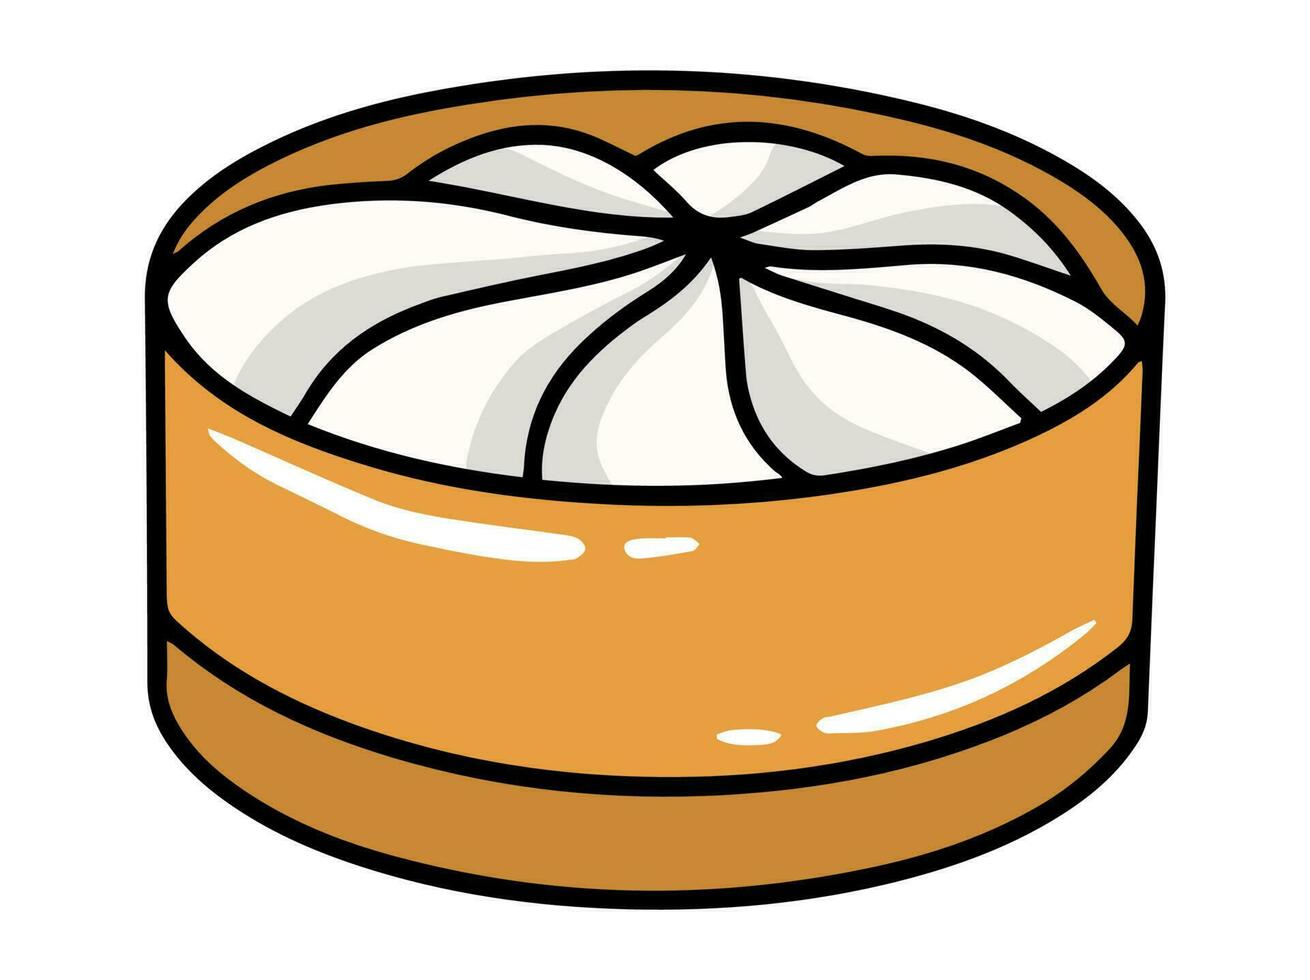 Bakpao Clip Art illustration in basket vector